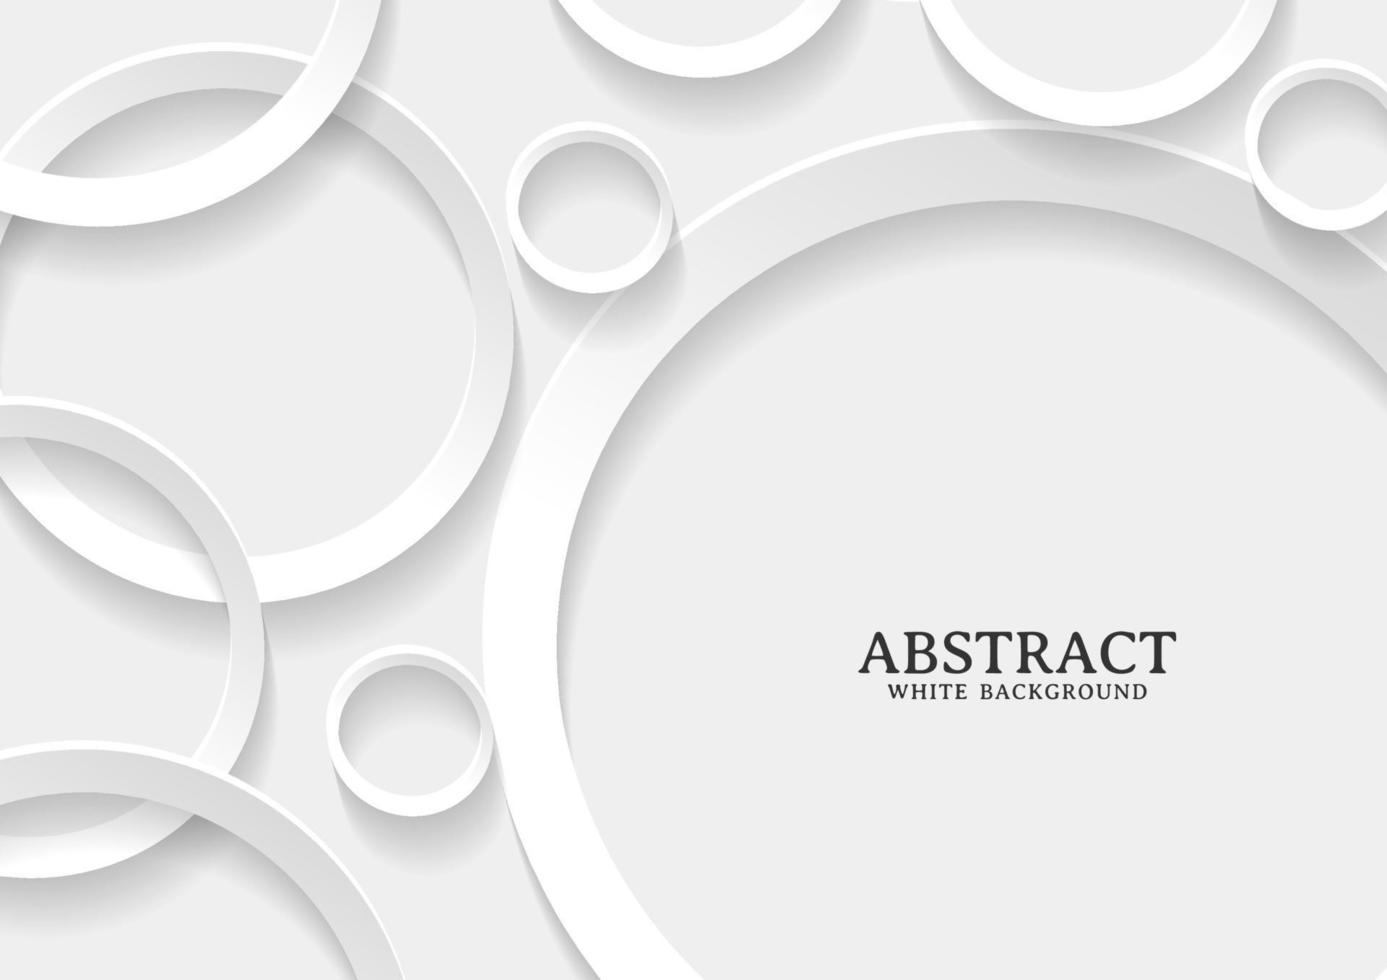 abstrakt vit och grå cirkel bakgrundsstruktur vektor